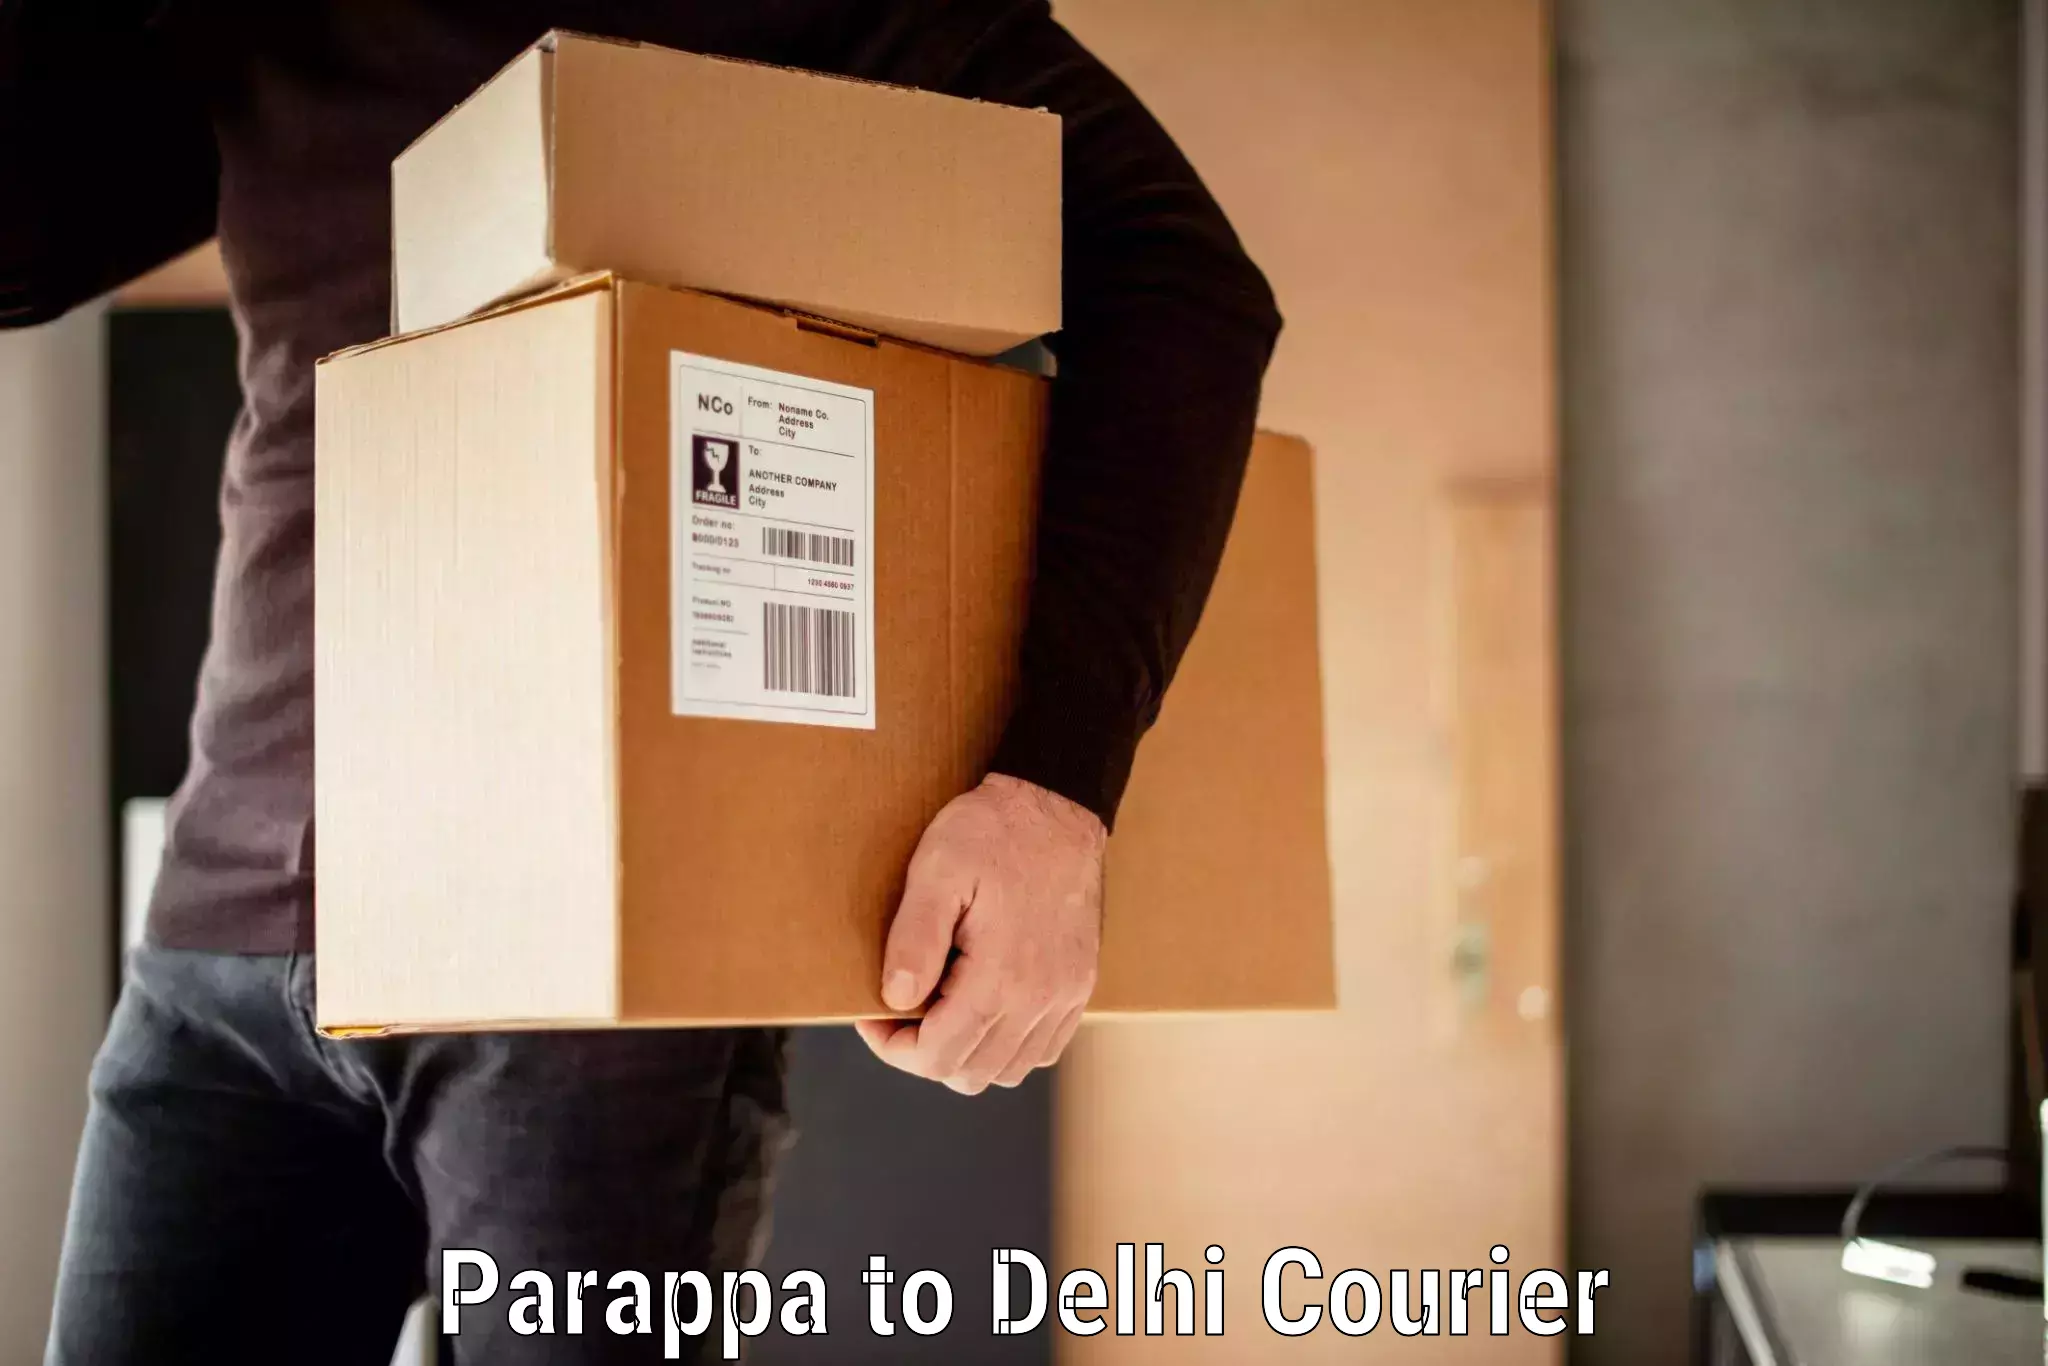 Door-to-door baggage service Parappa to Delhi